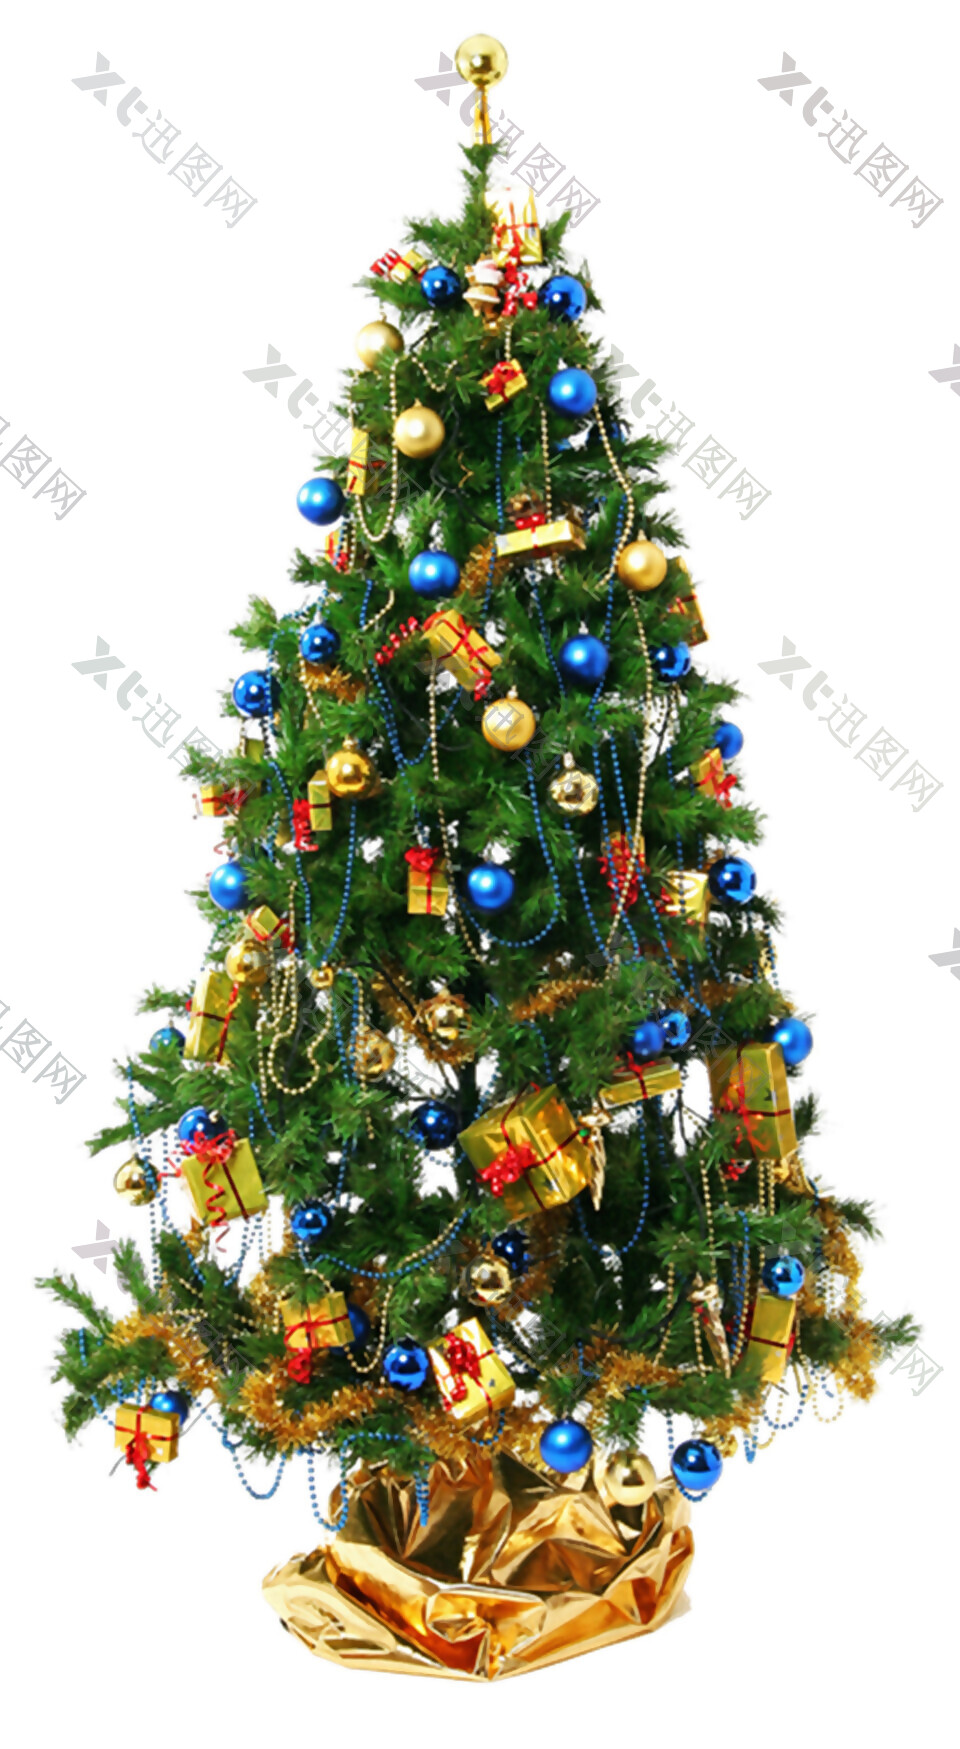 挂满圣诞装饰物的圣诞树元素